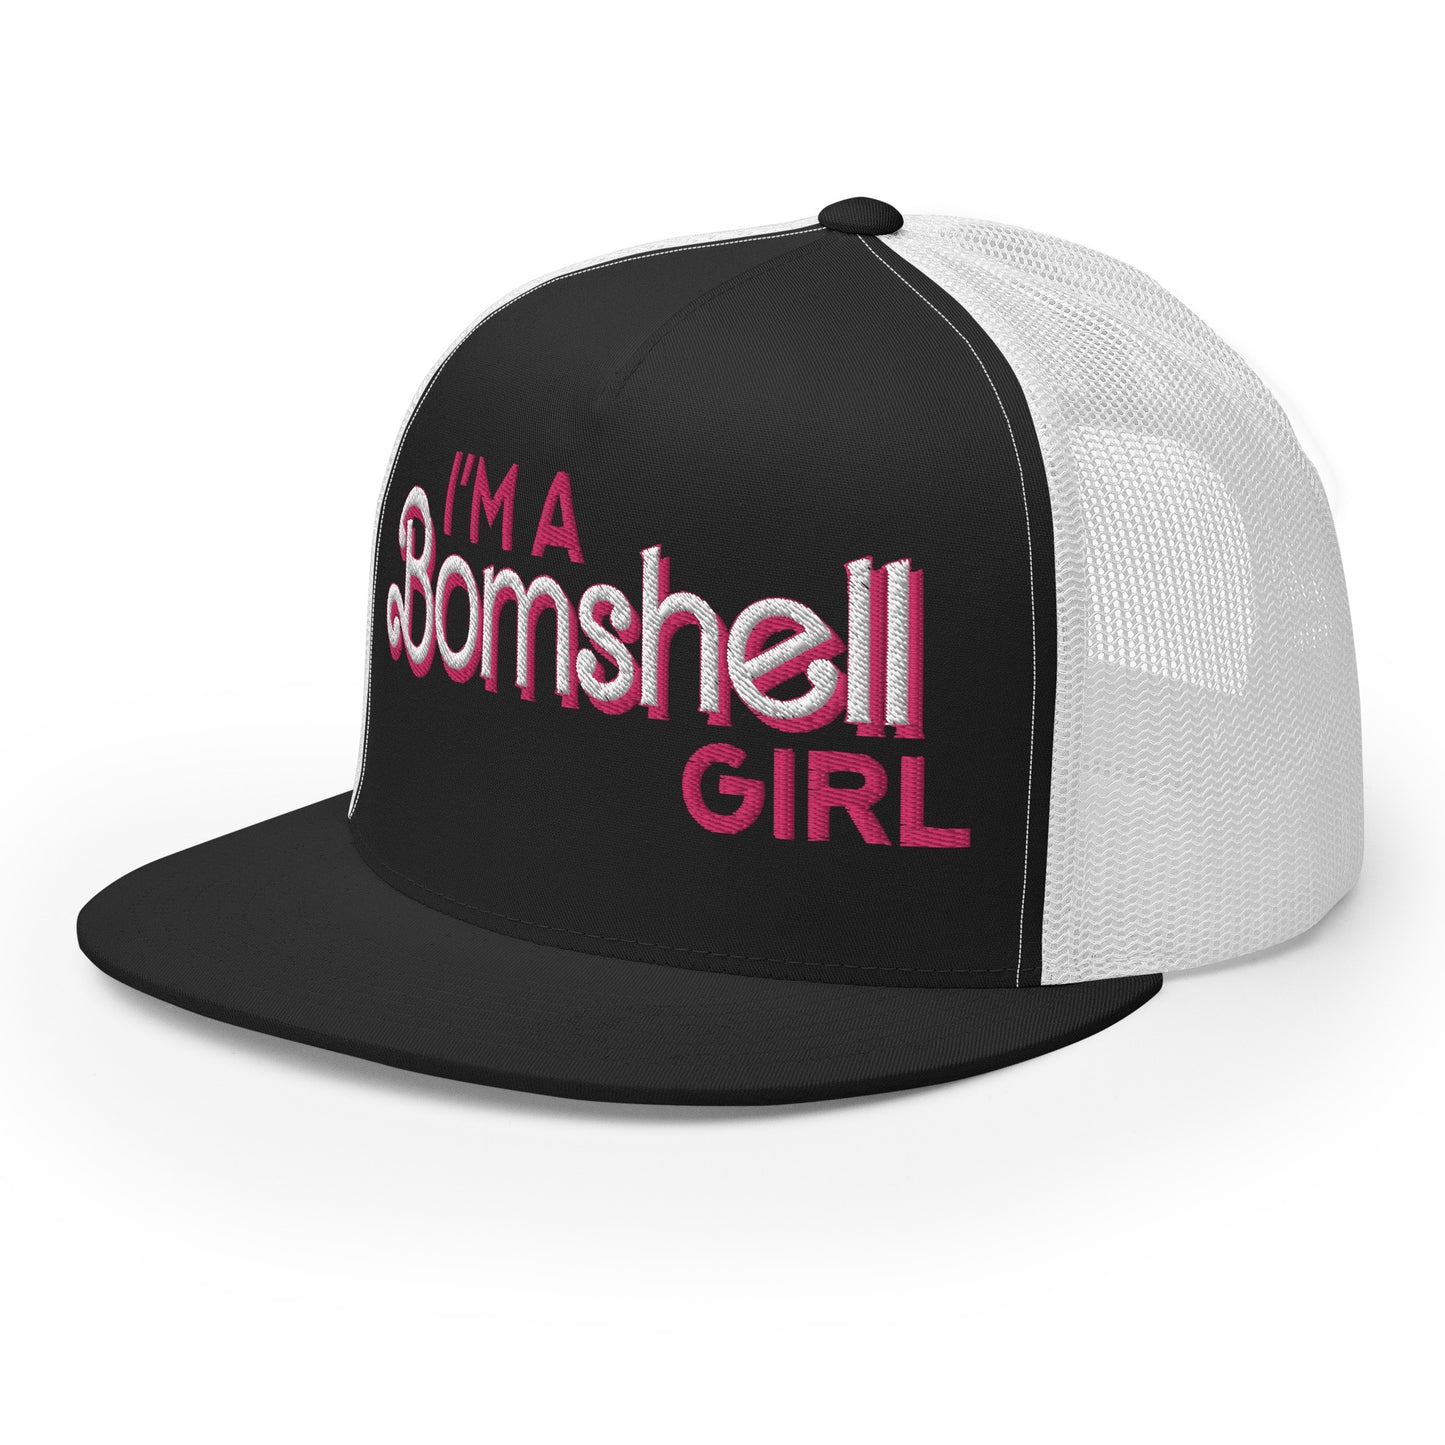 Bomshell Girl Trucker Cap